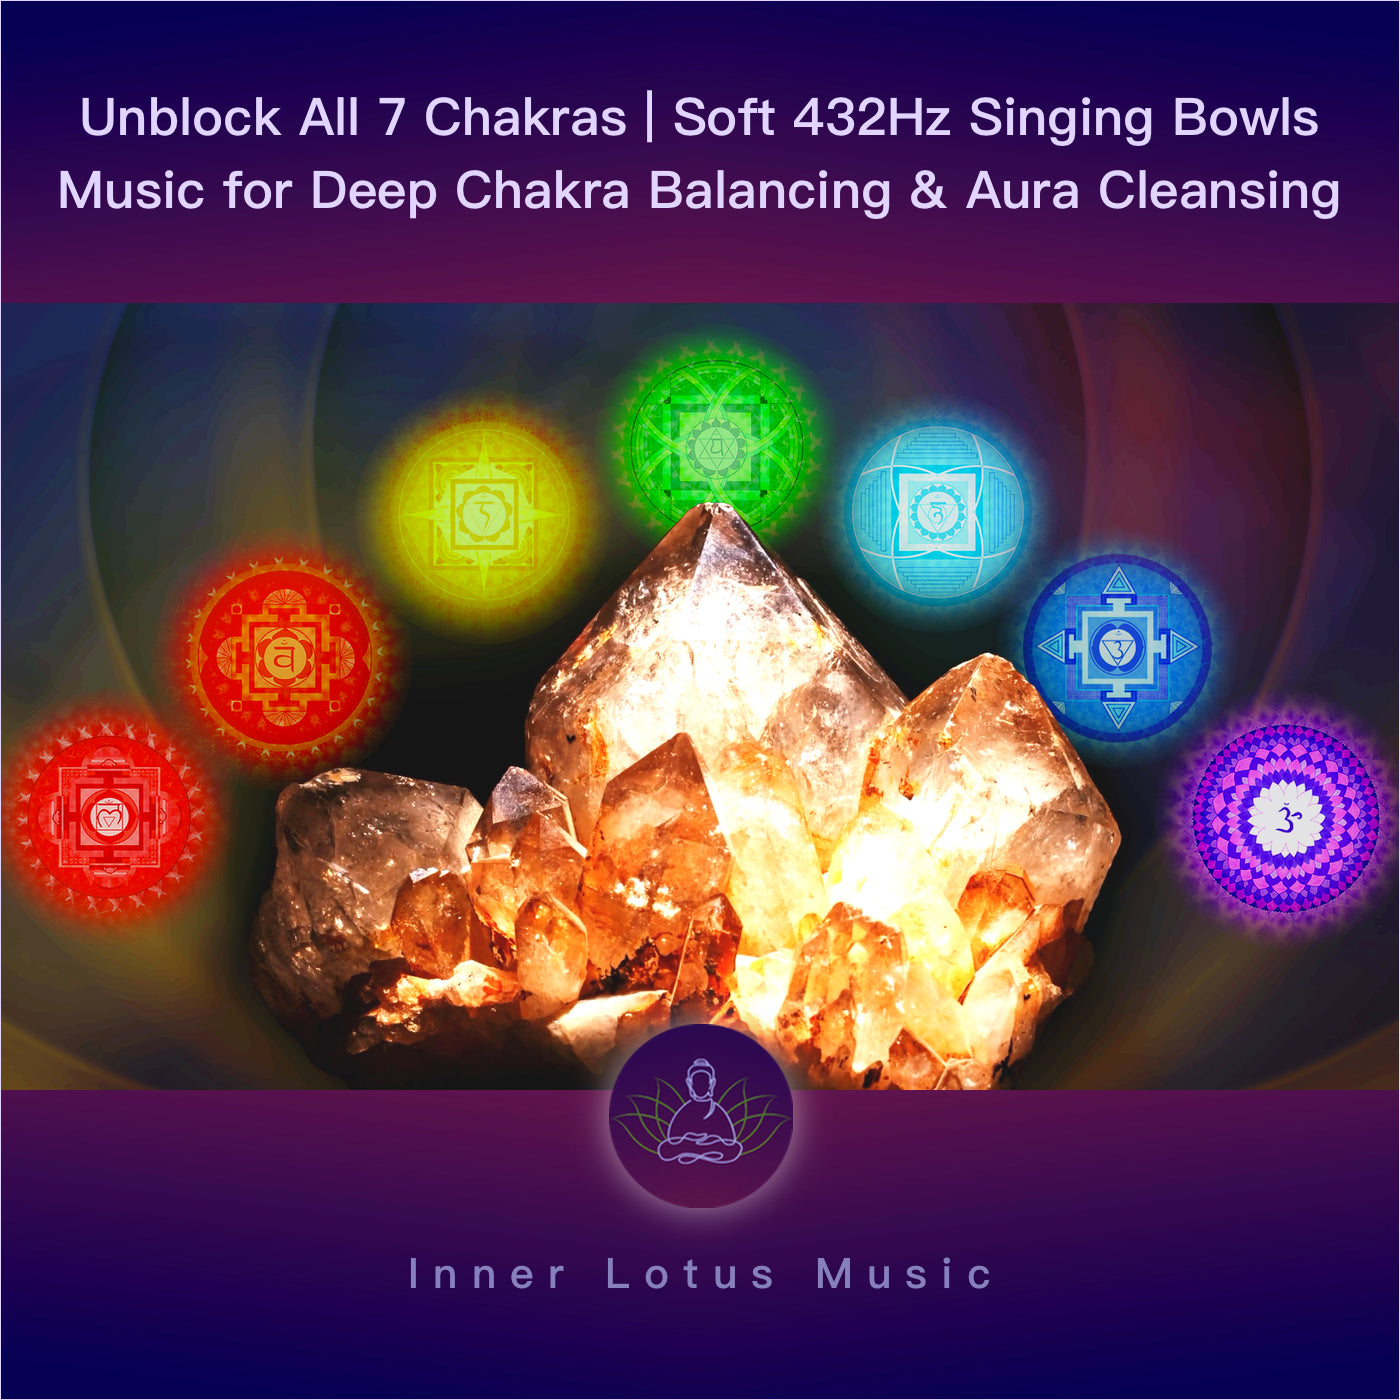 Débloque Les 7 Chakras | Musique 432Hz avec Bols Chantants | Ouverture, Nettoyage & Guérison Aura